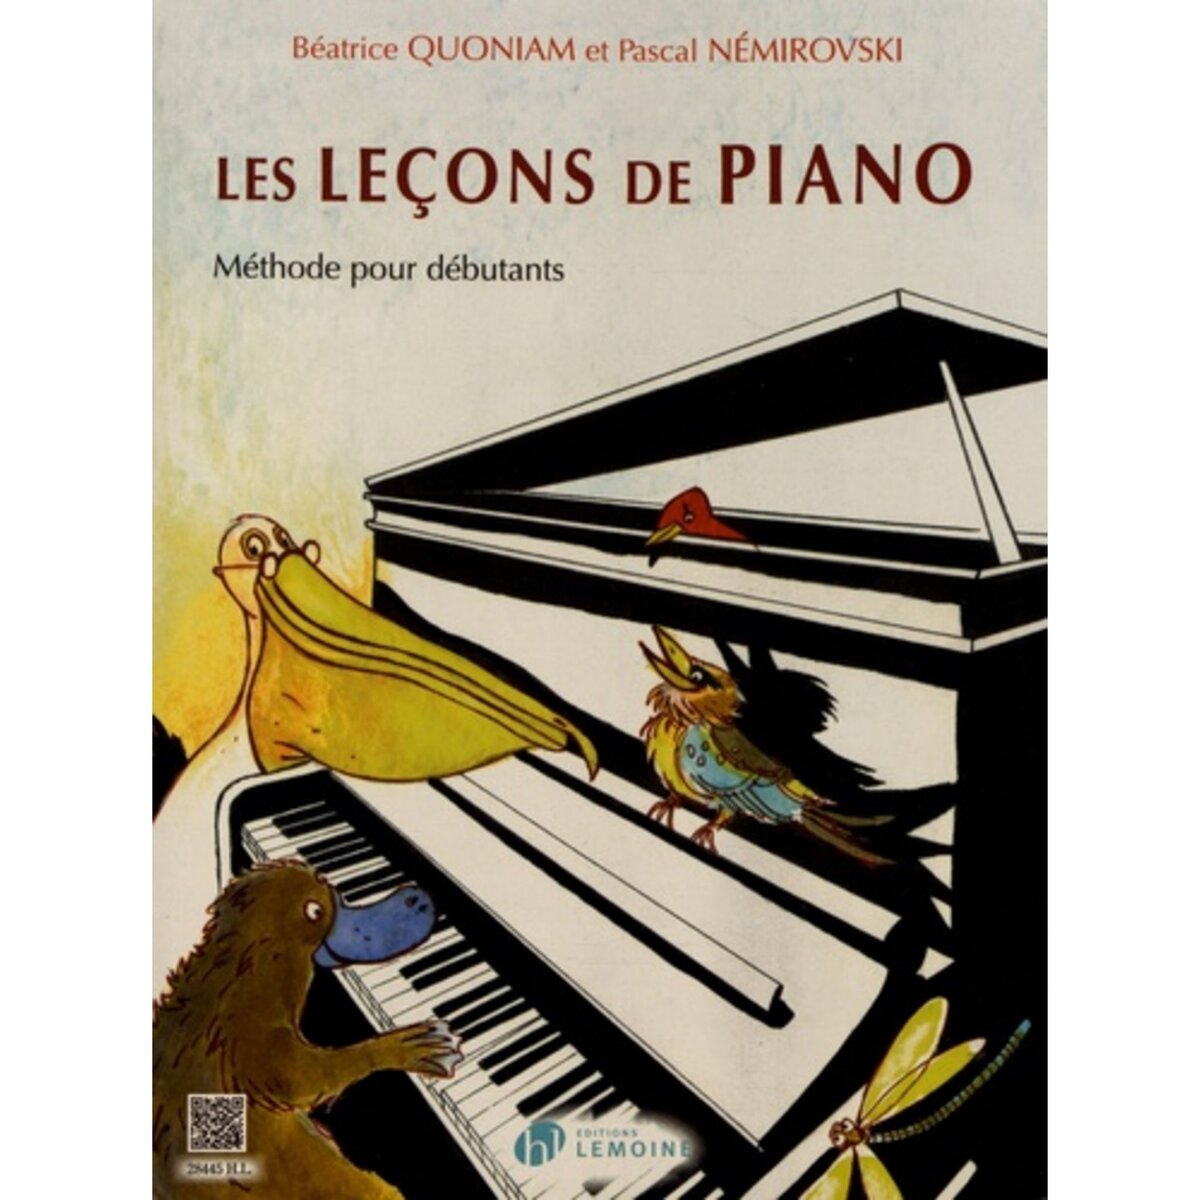  LES LECONS DE PIANO. METHODE POUR DEBUTANTS, Quoniam Béatrice